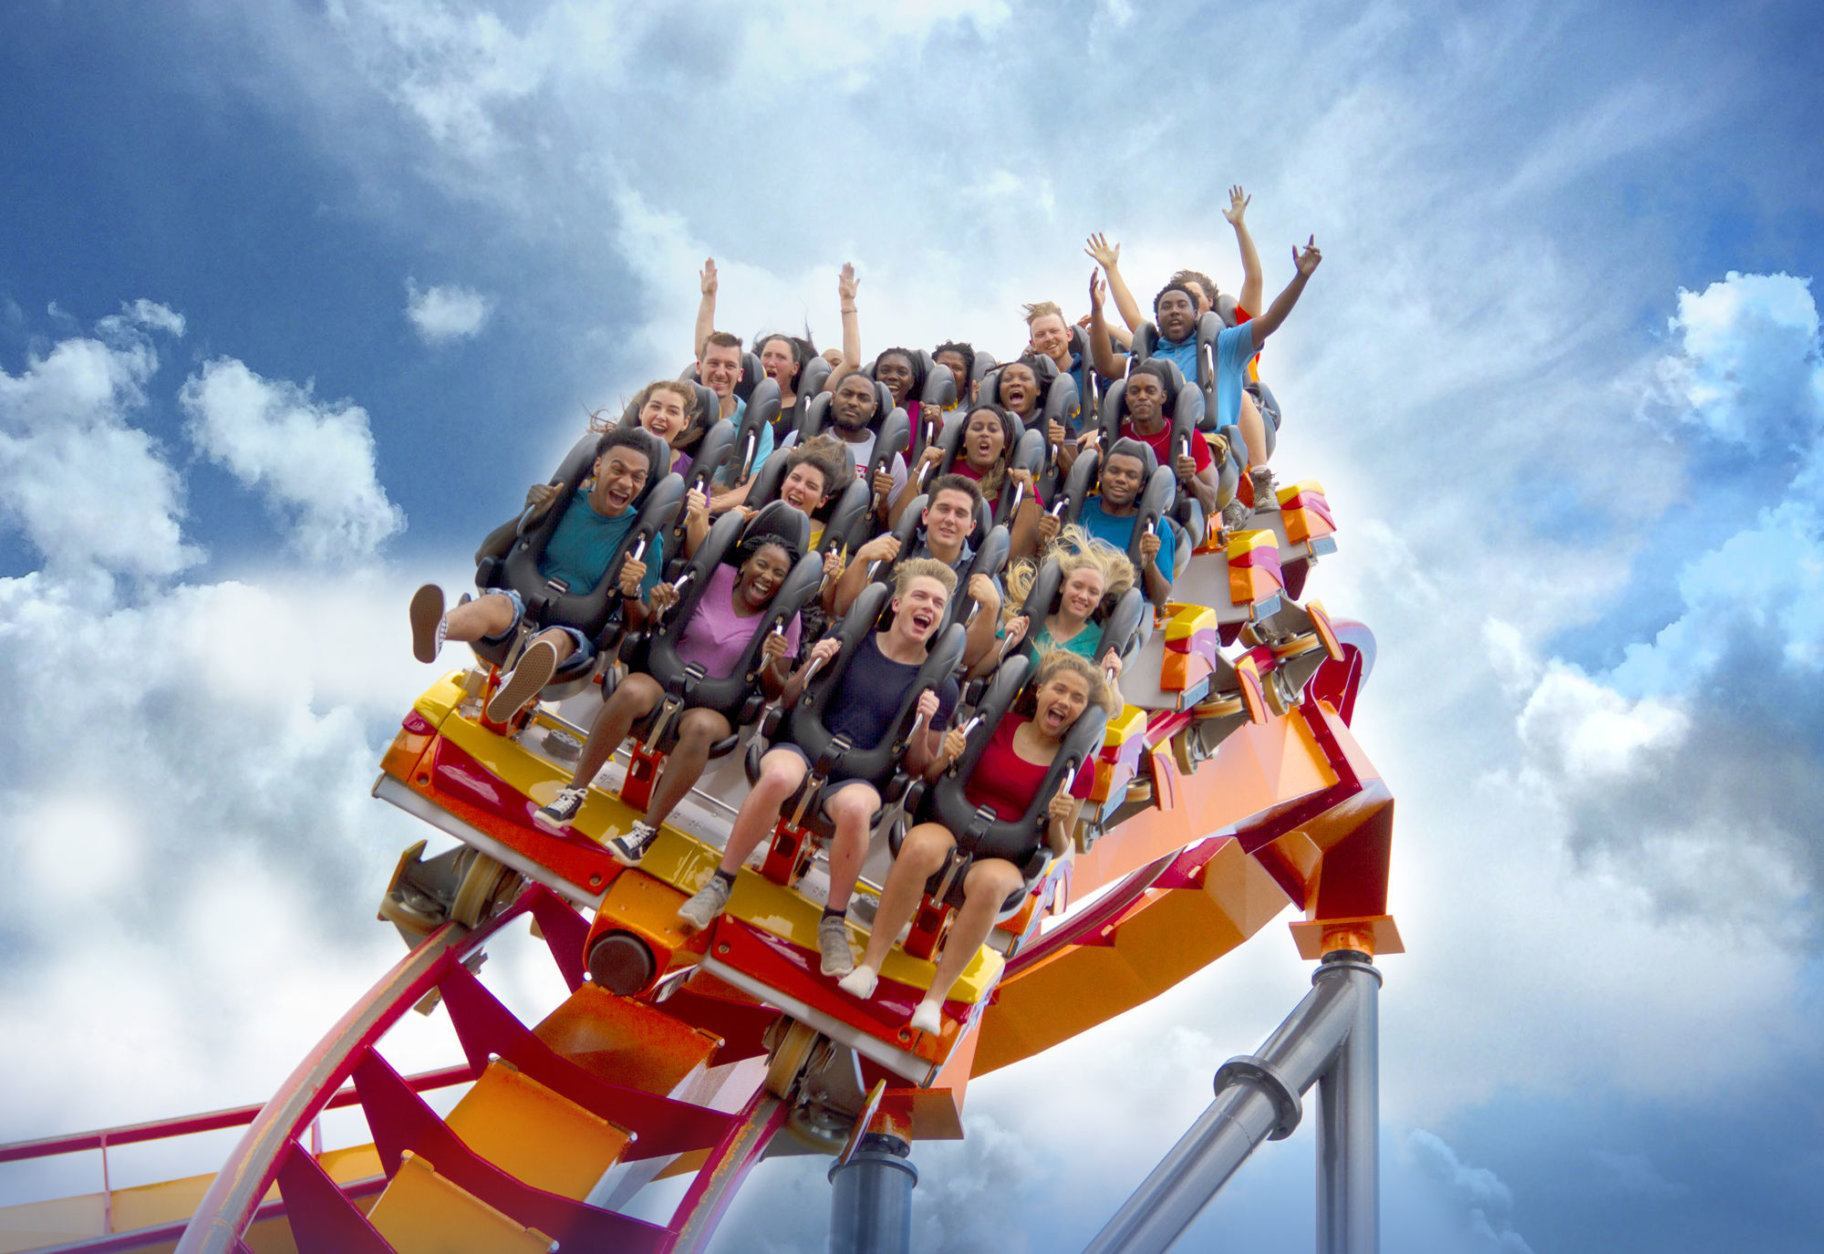 Gaaahhhh! Six Flags’ Firebird roller coaster has helixes, loops — and